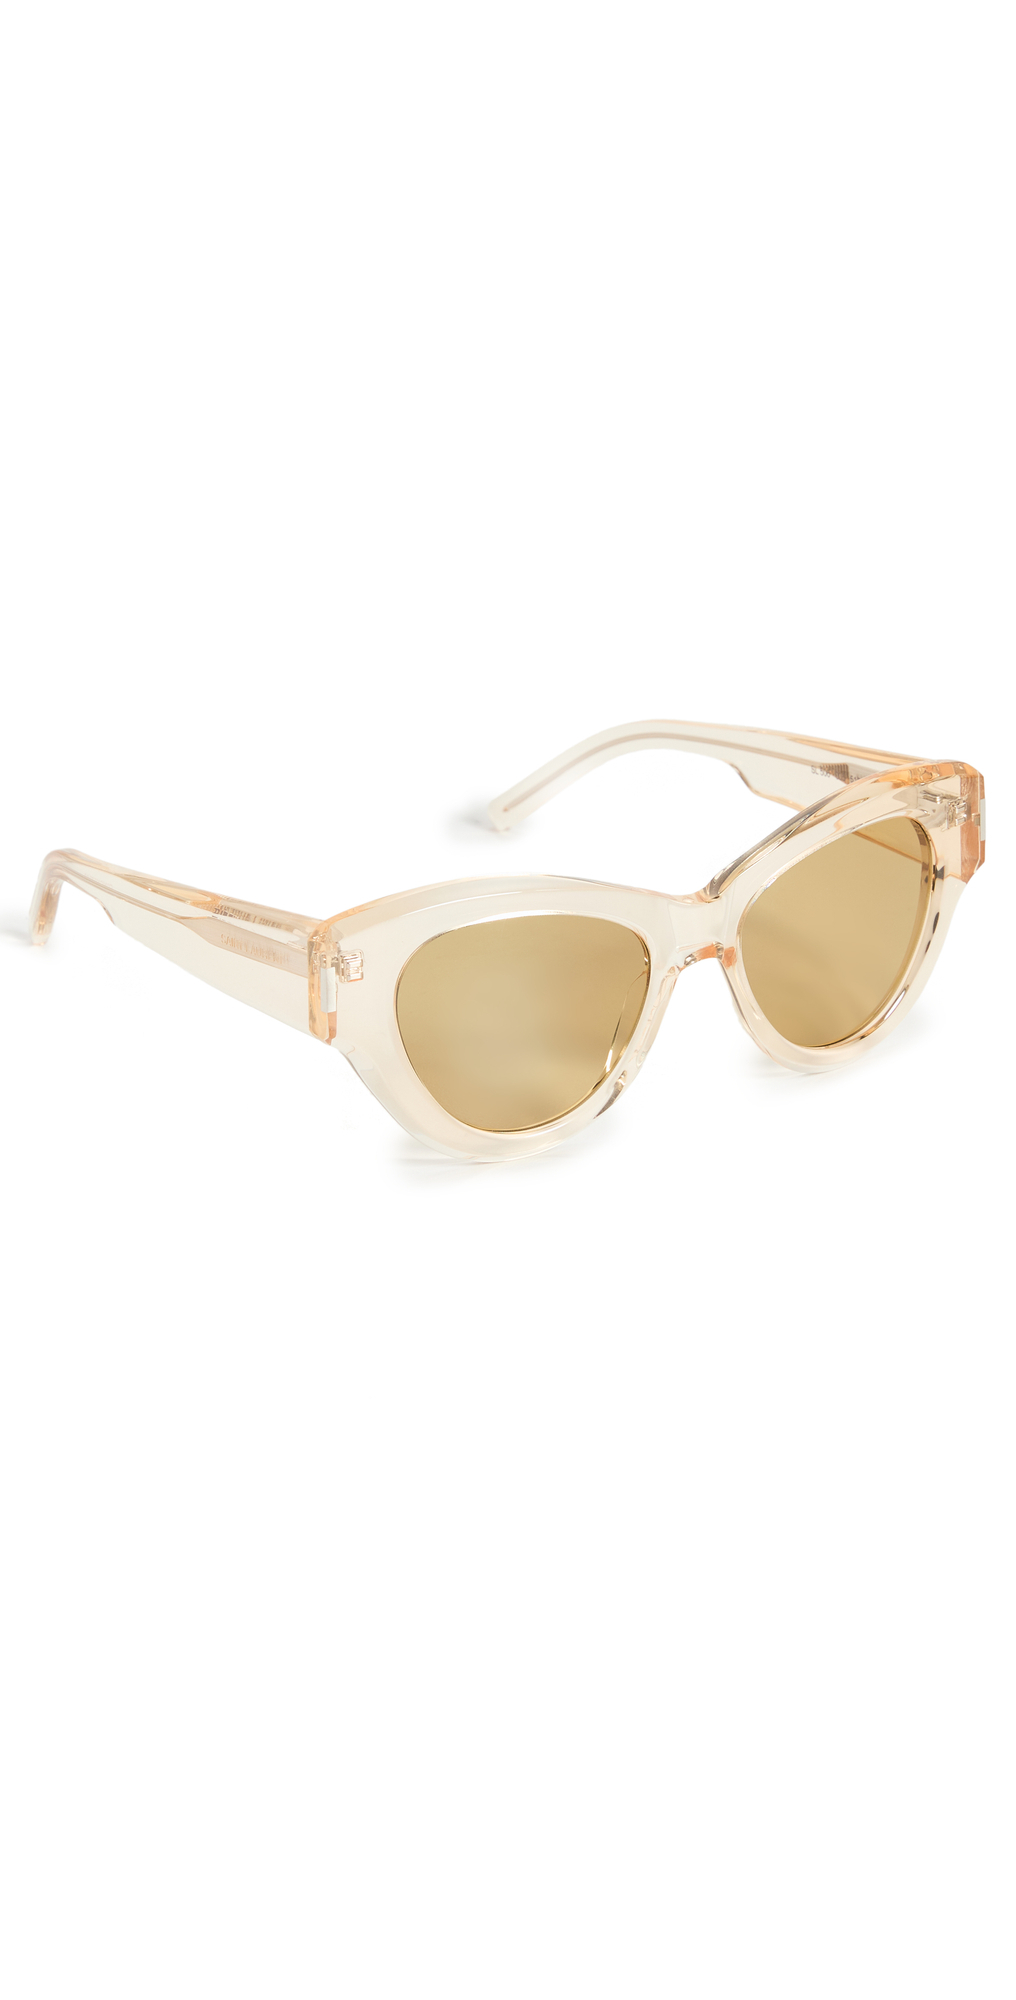 Saint Laurent SL 506 Sunglasses in yellow / transparent